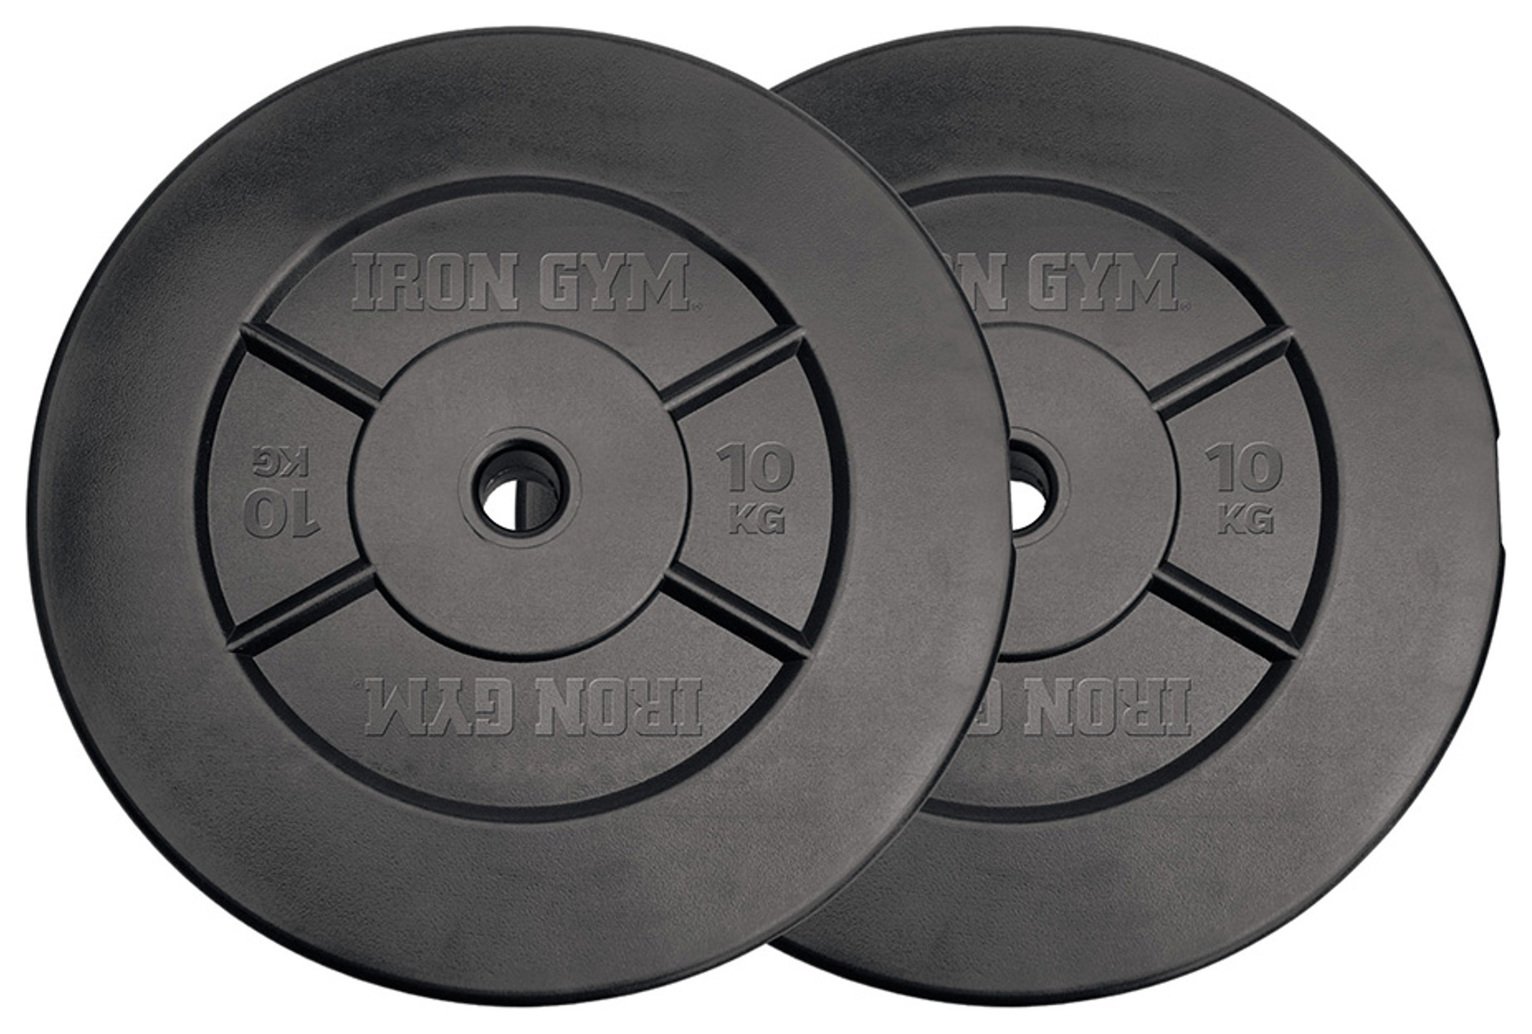 Iron Gym Vinyl Weight Plates - 2 x 10kg